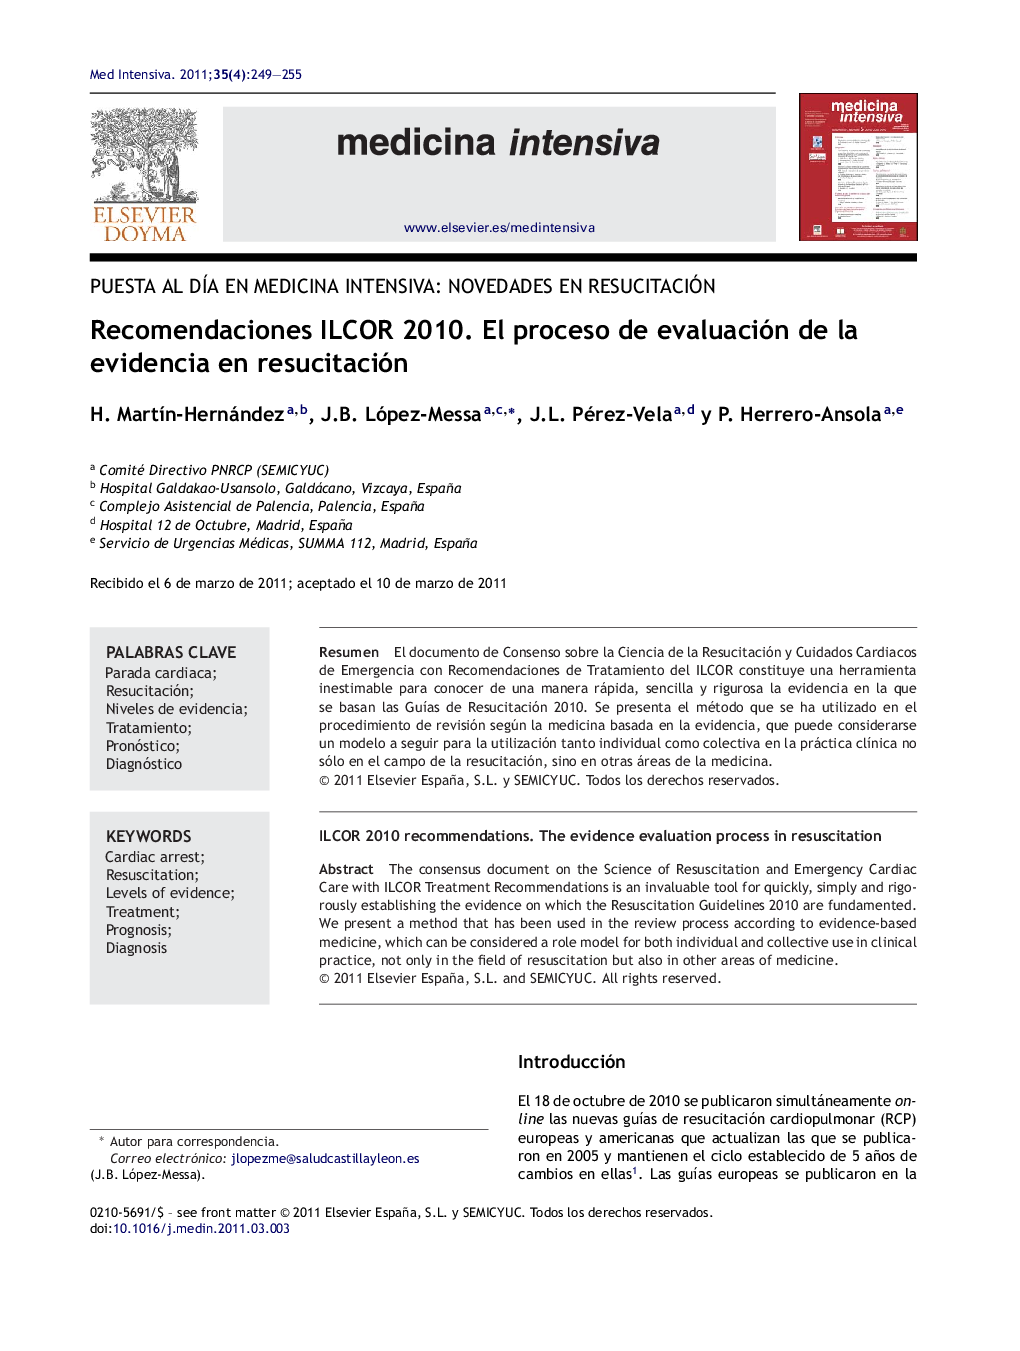 Recomendaciones ILCOR 2010. El proceso de evaluación de la evidencia en resucitación